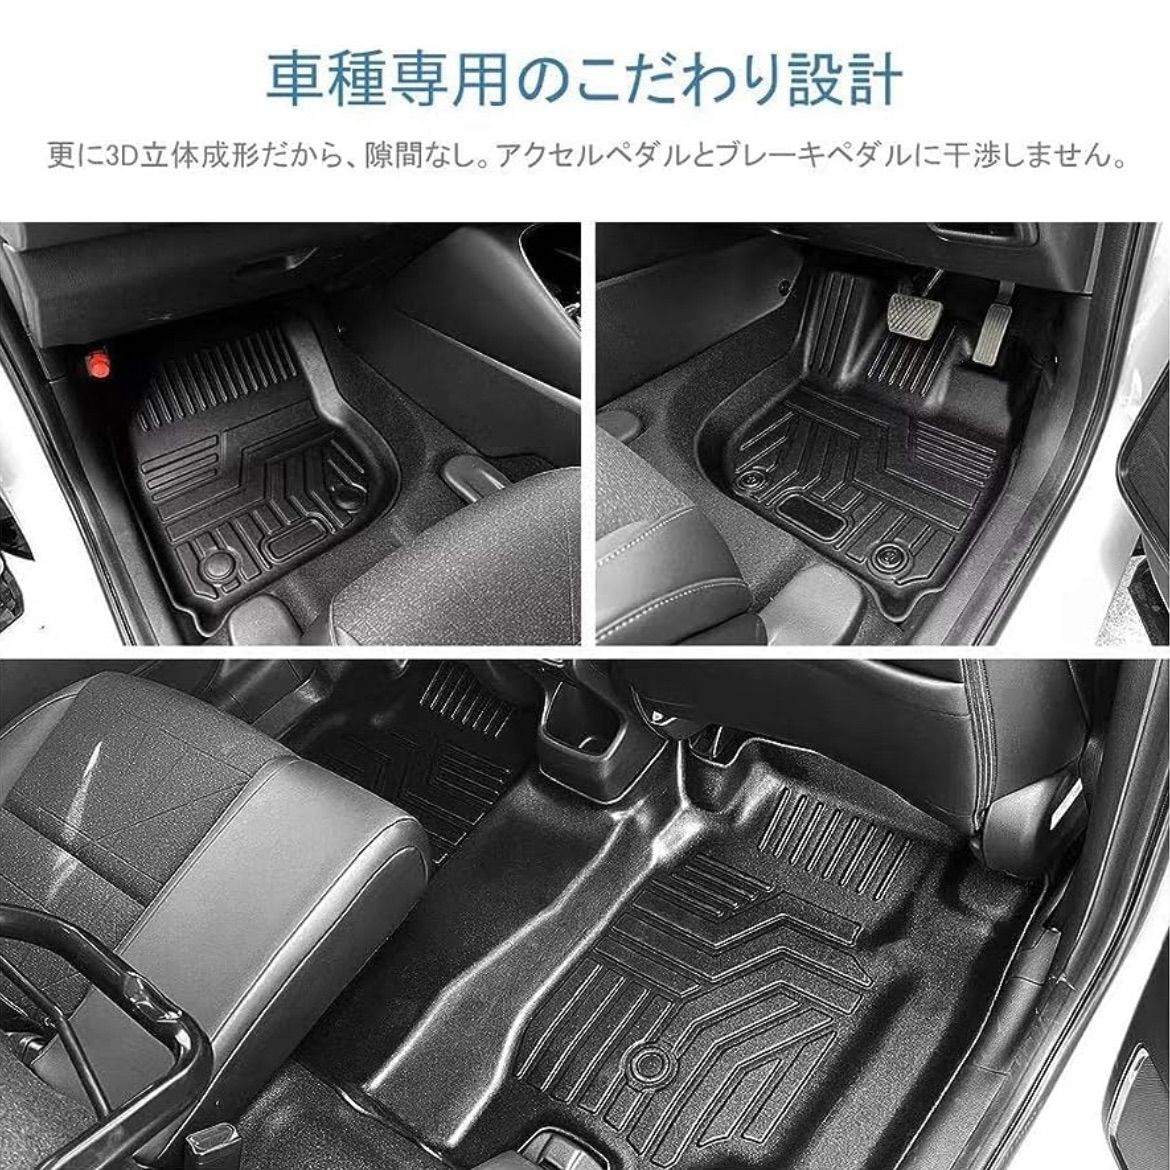 新型 トヨタ ハイラックス 立体 フロアマット 3D カーマット カー用品